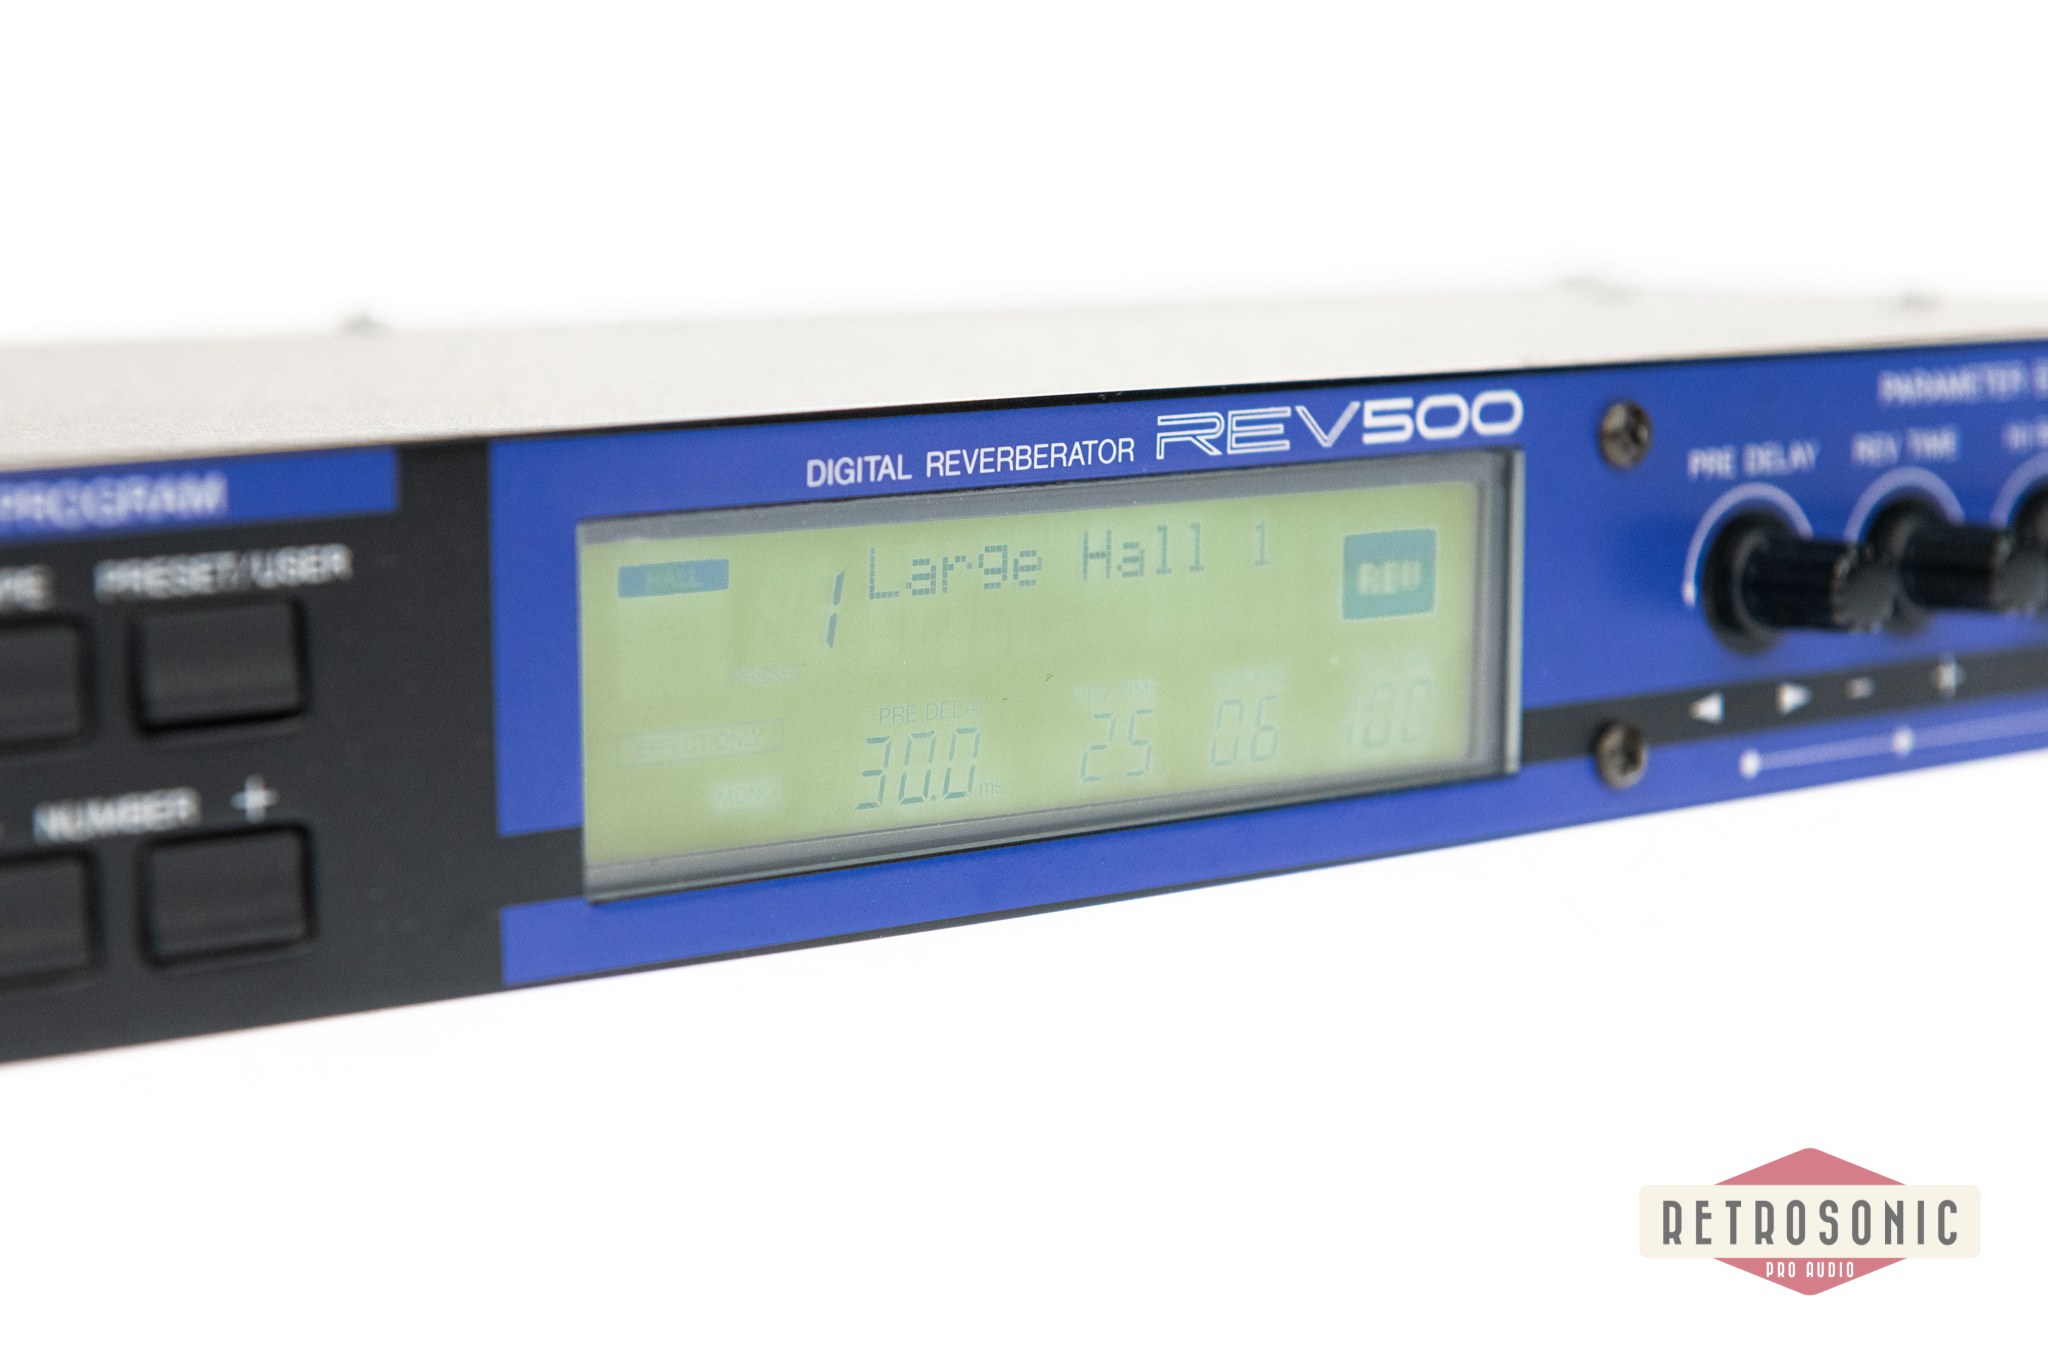 Yamaha REV-500 Digital Reverberator #2